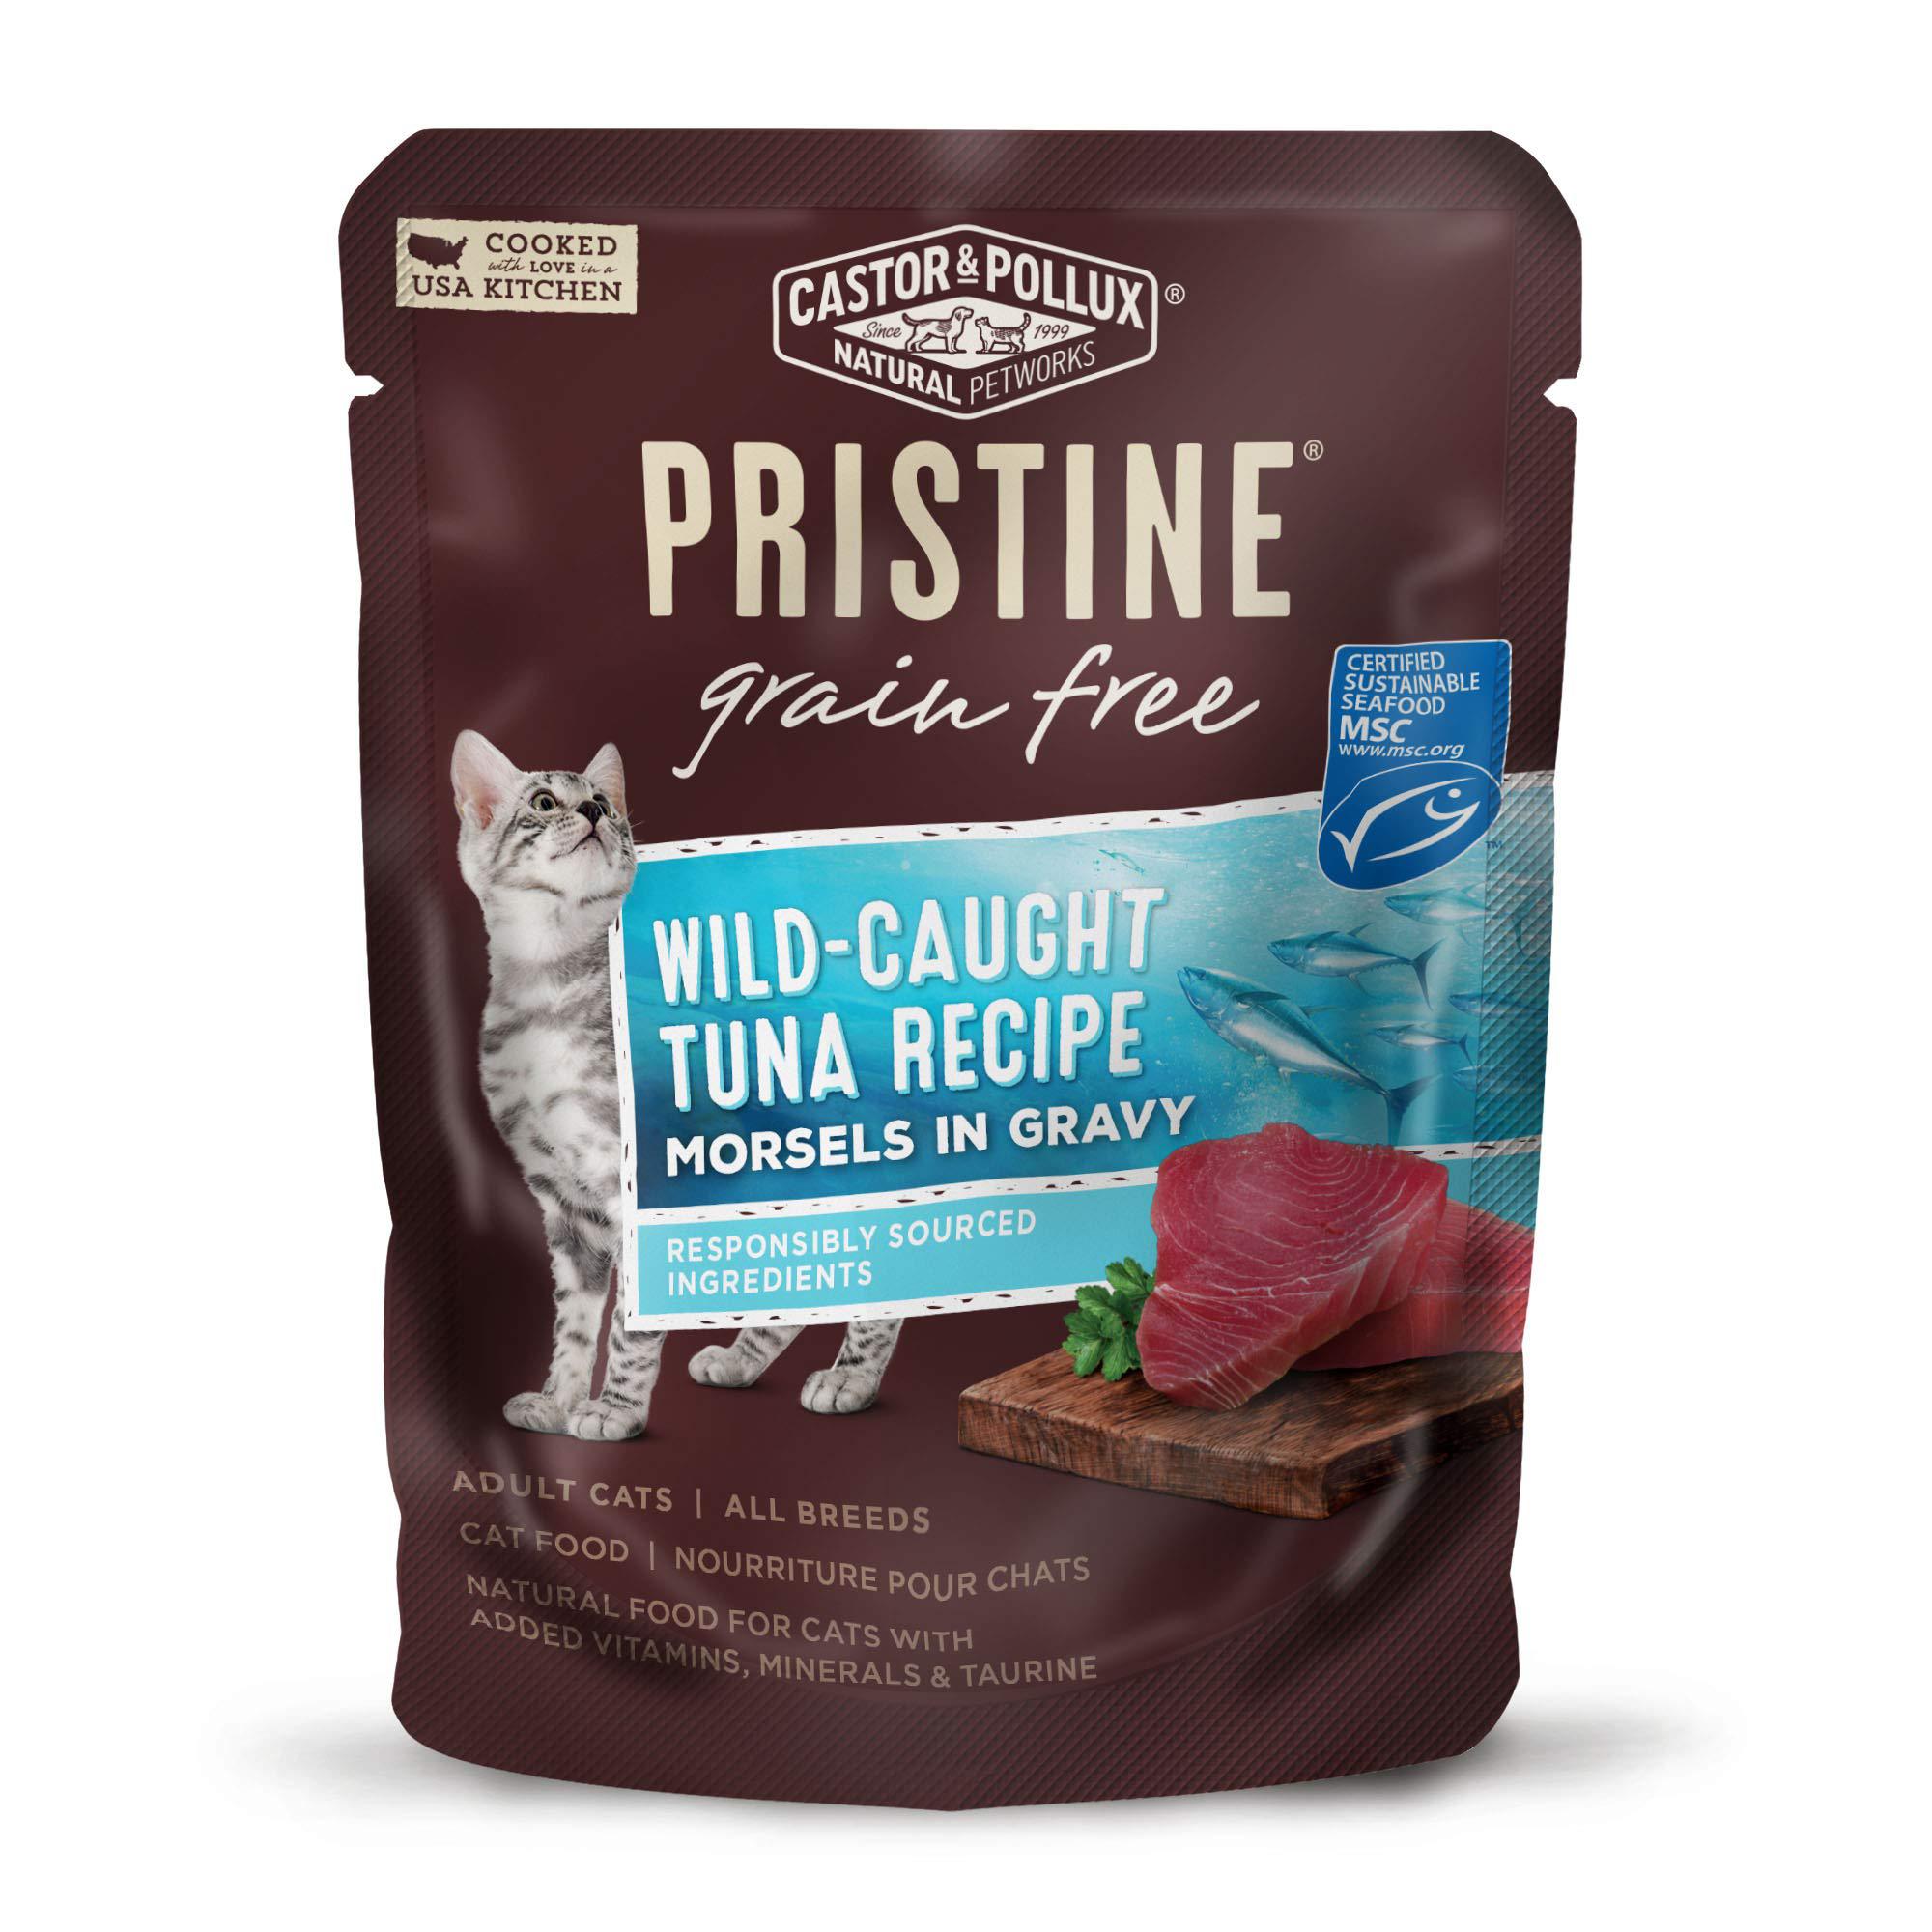 castor & pollux pristine grain free wild-caught tuna recipe morsels in gravy cat food pouches, (24) 3oz cans